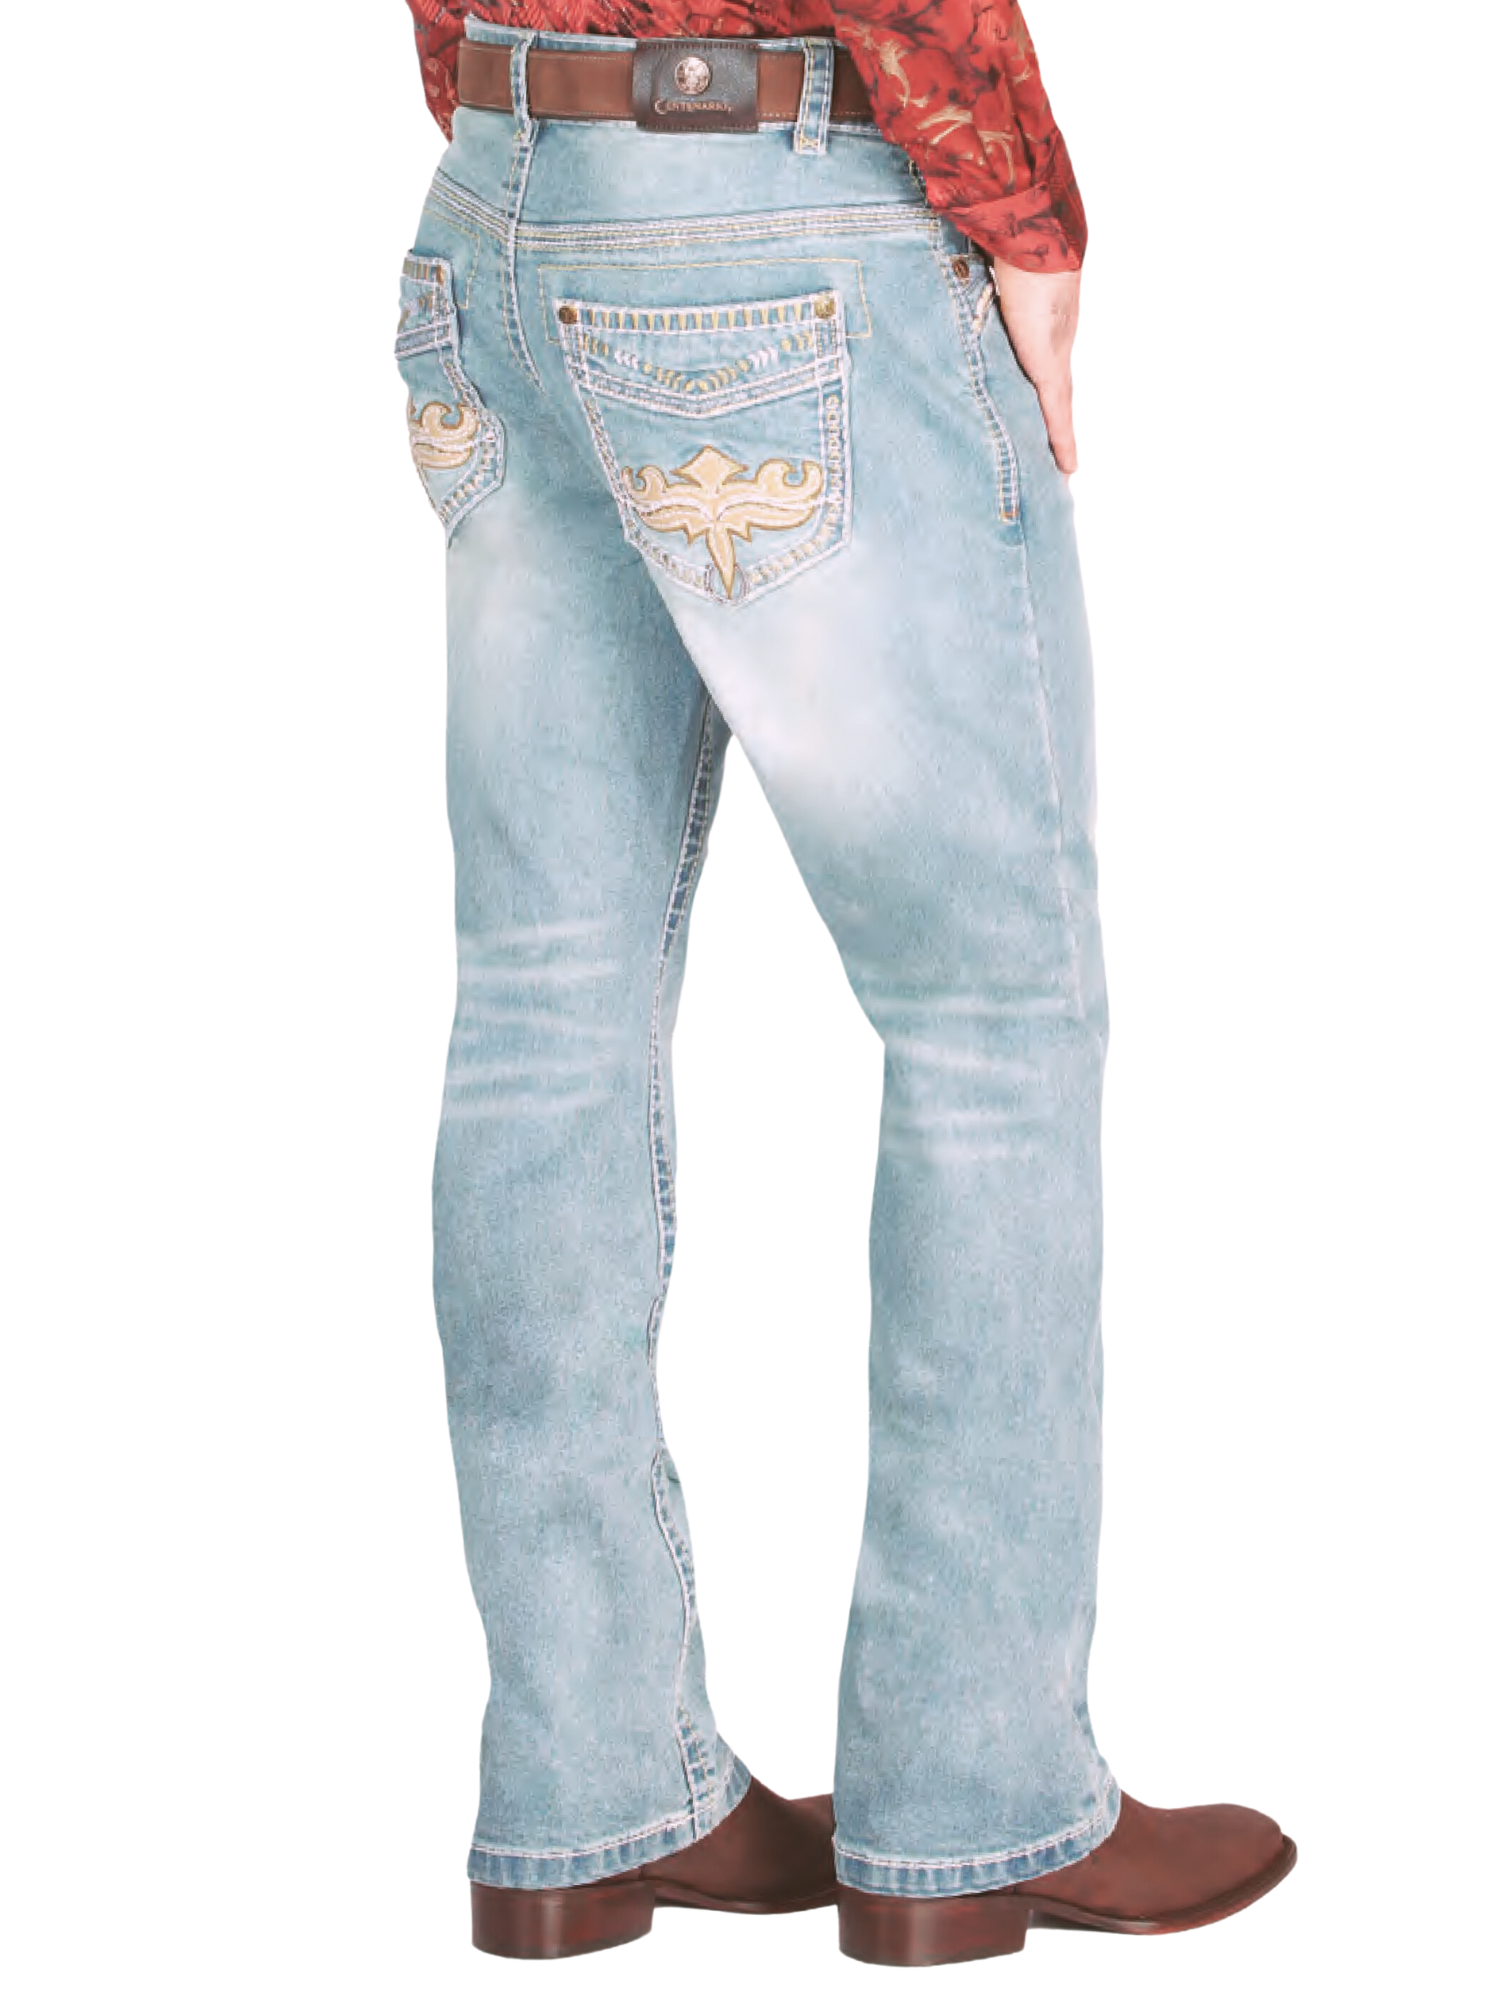 Pantalon Vaquero de Mezclilla Boot Cut Azul Claro para Hombre 'Centenario' - ID: 44833 Denim Jeans Centenario 